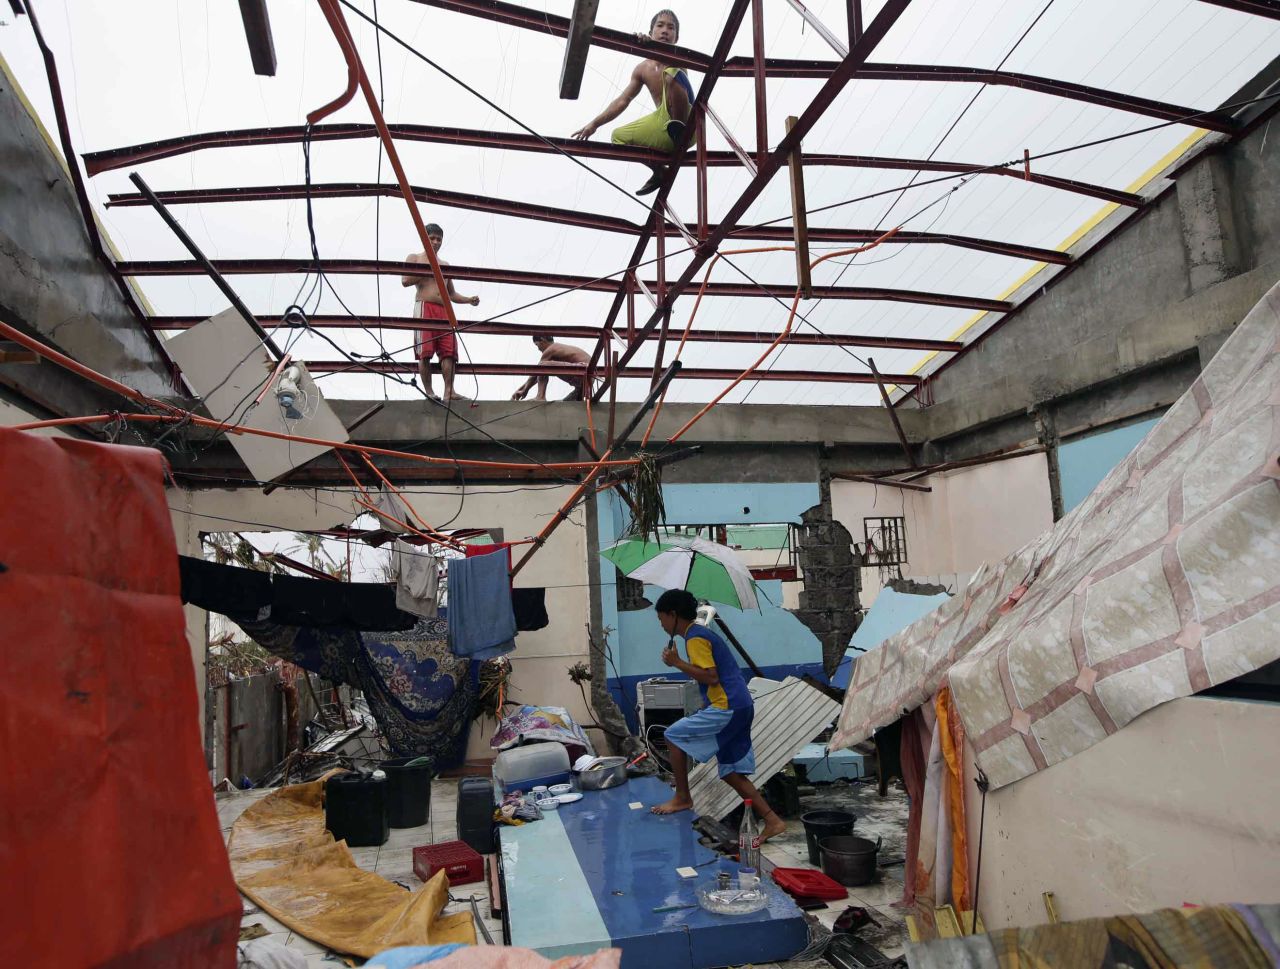 Un joven residente de Tacloban camina dentro de una casa dañada por la tormenta, el 10 de noviembre.